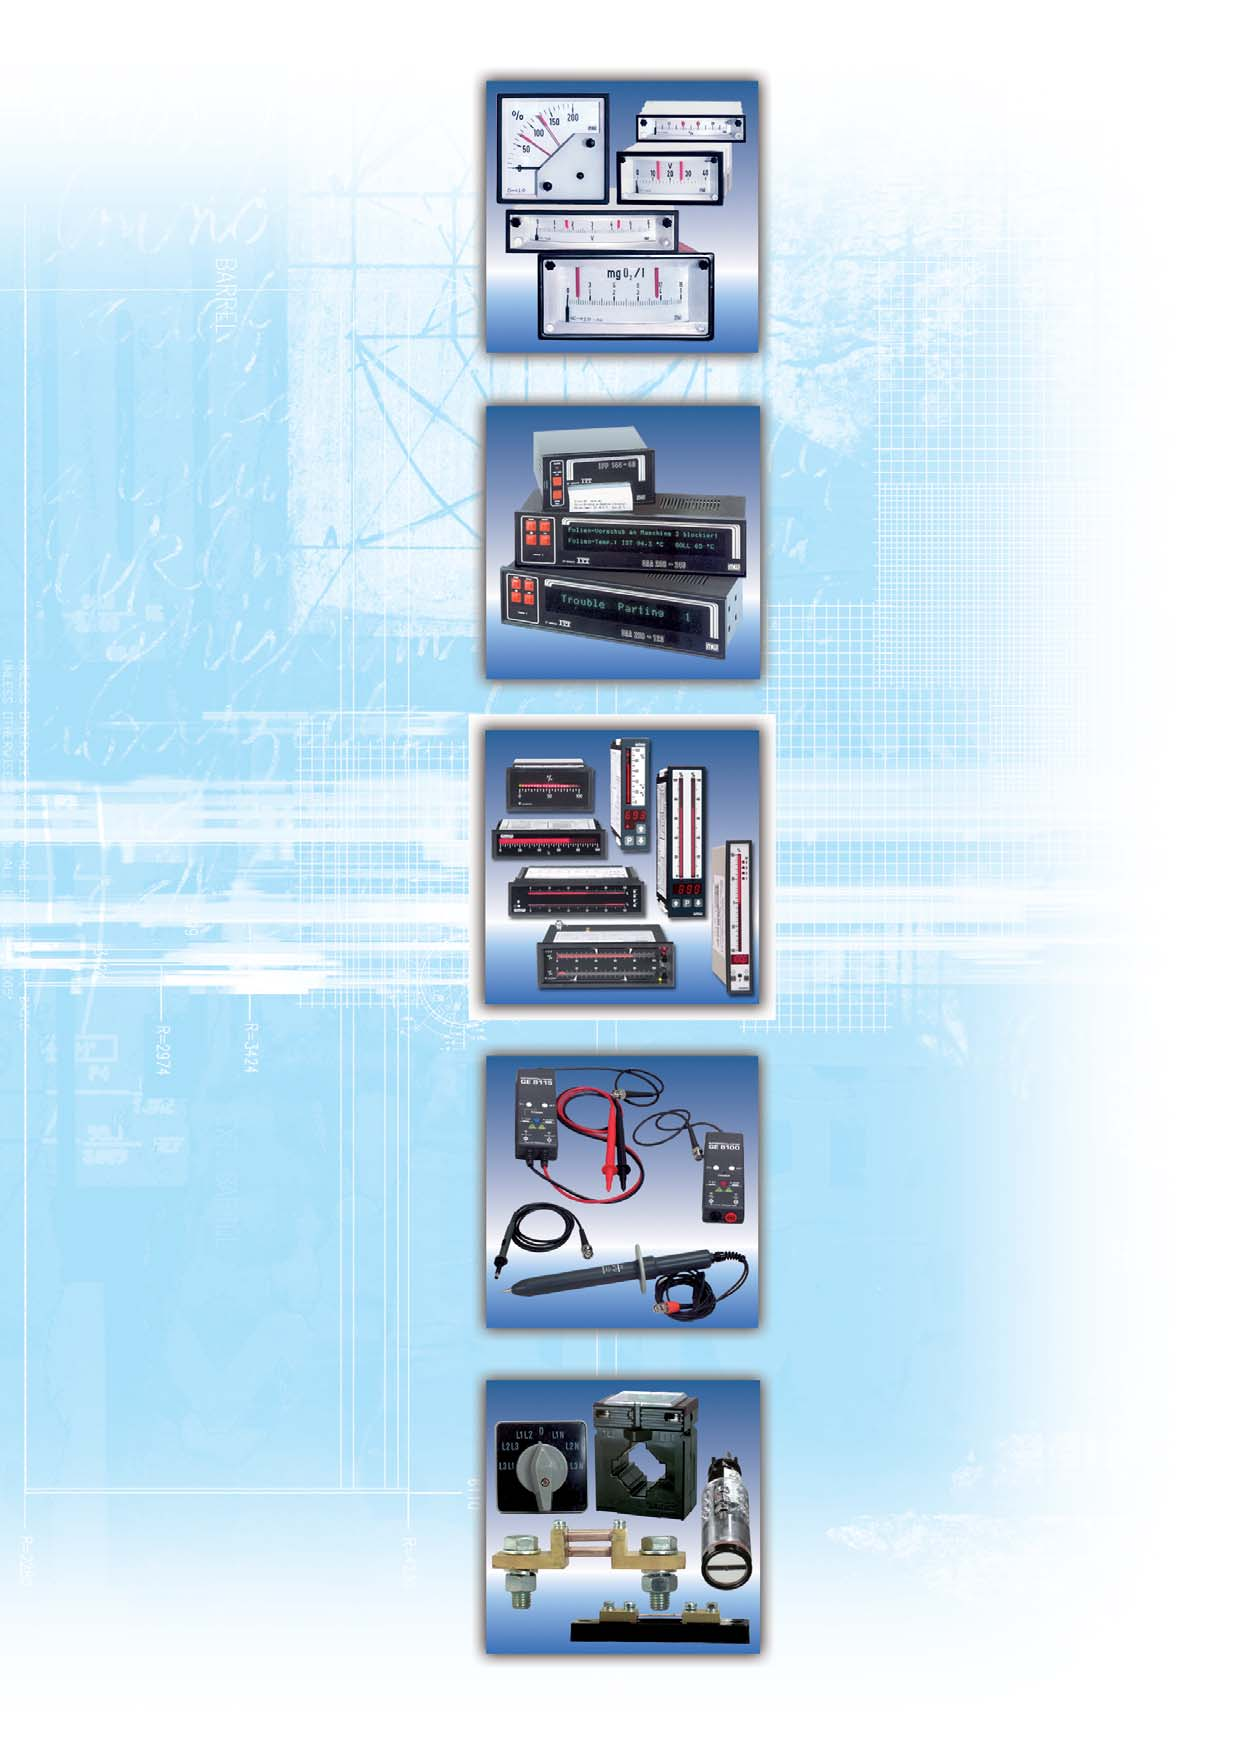 Kontaktgeräte Für alle elektrischen Größen Pt 100 und Thermoelemente 1 oder 2 Grenzwerte Schaltverhalten Ruhe- und Arbeitsstromprinzip 7 Gehäusegrößen Textanzeiger/Drucker 4 unterschiedliche